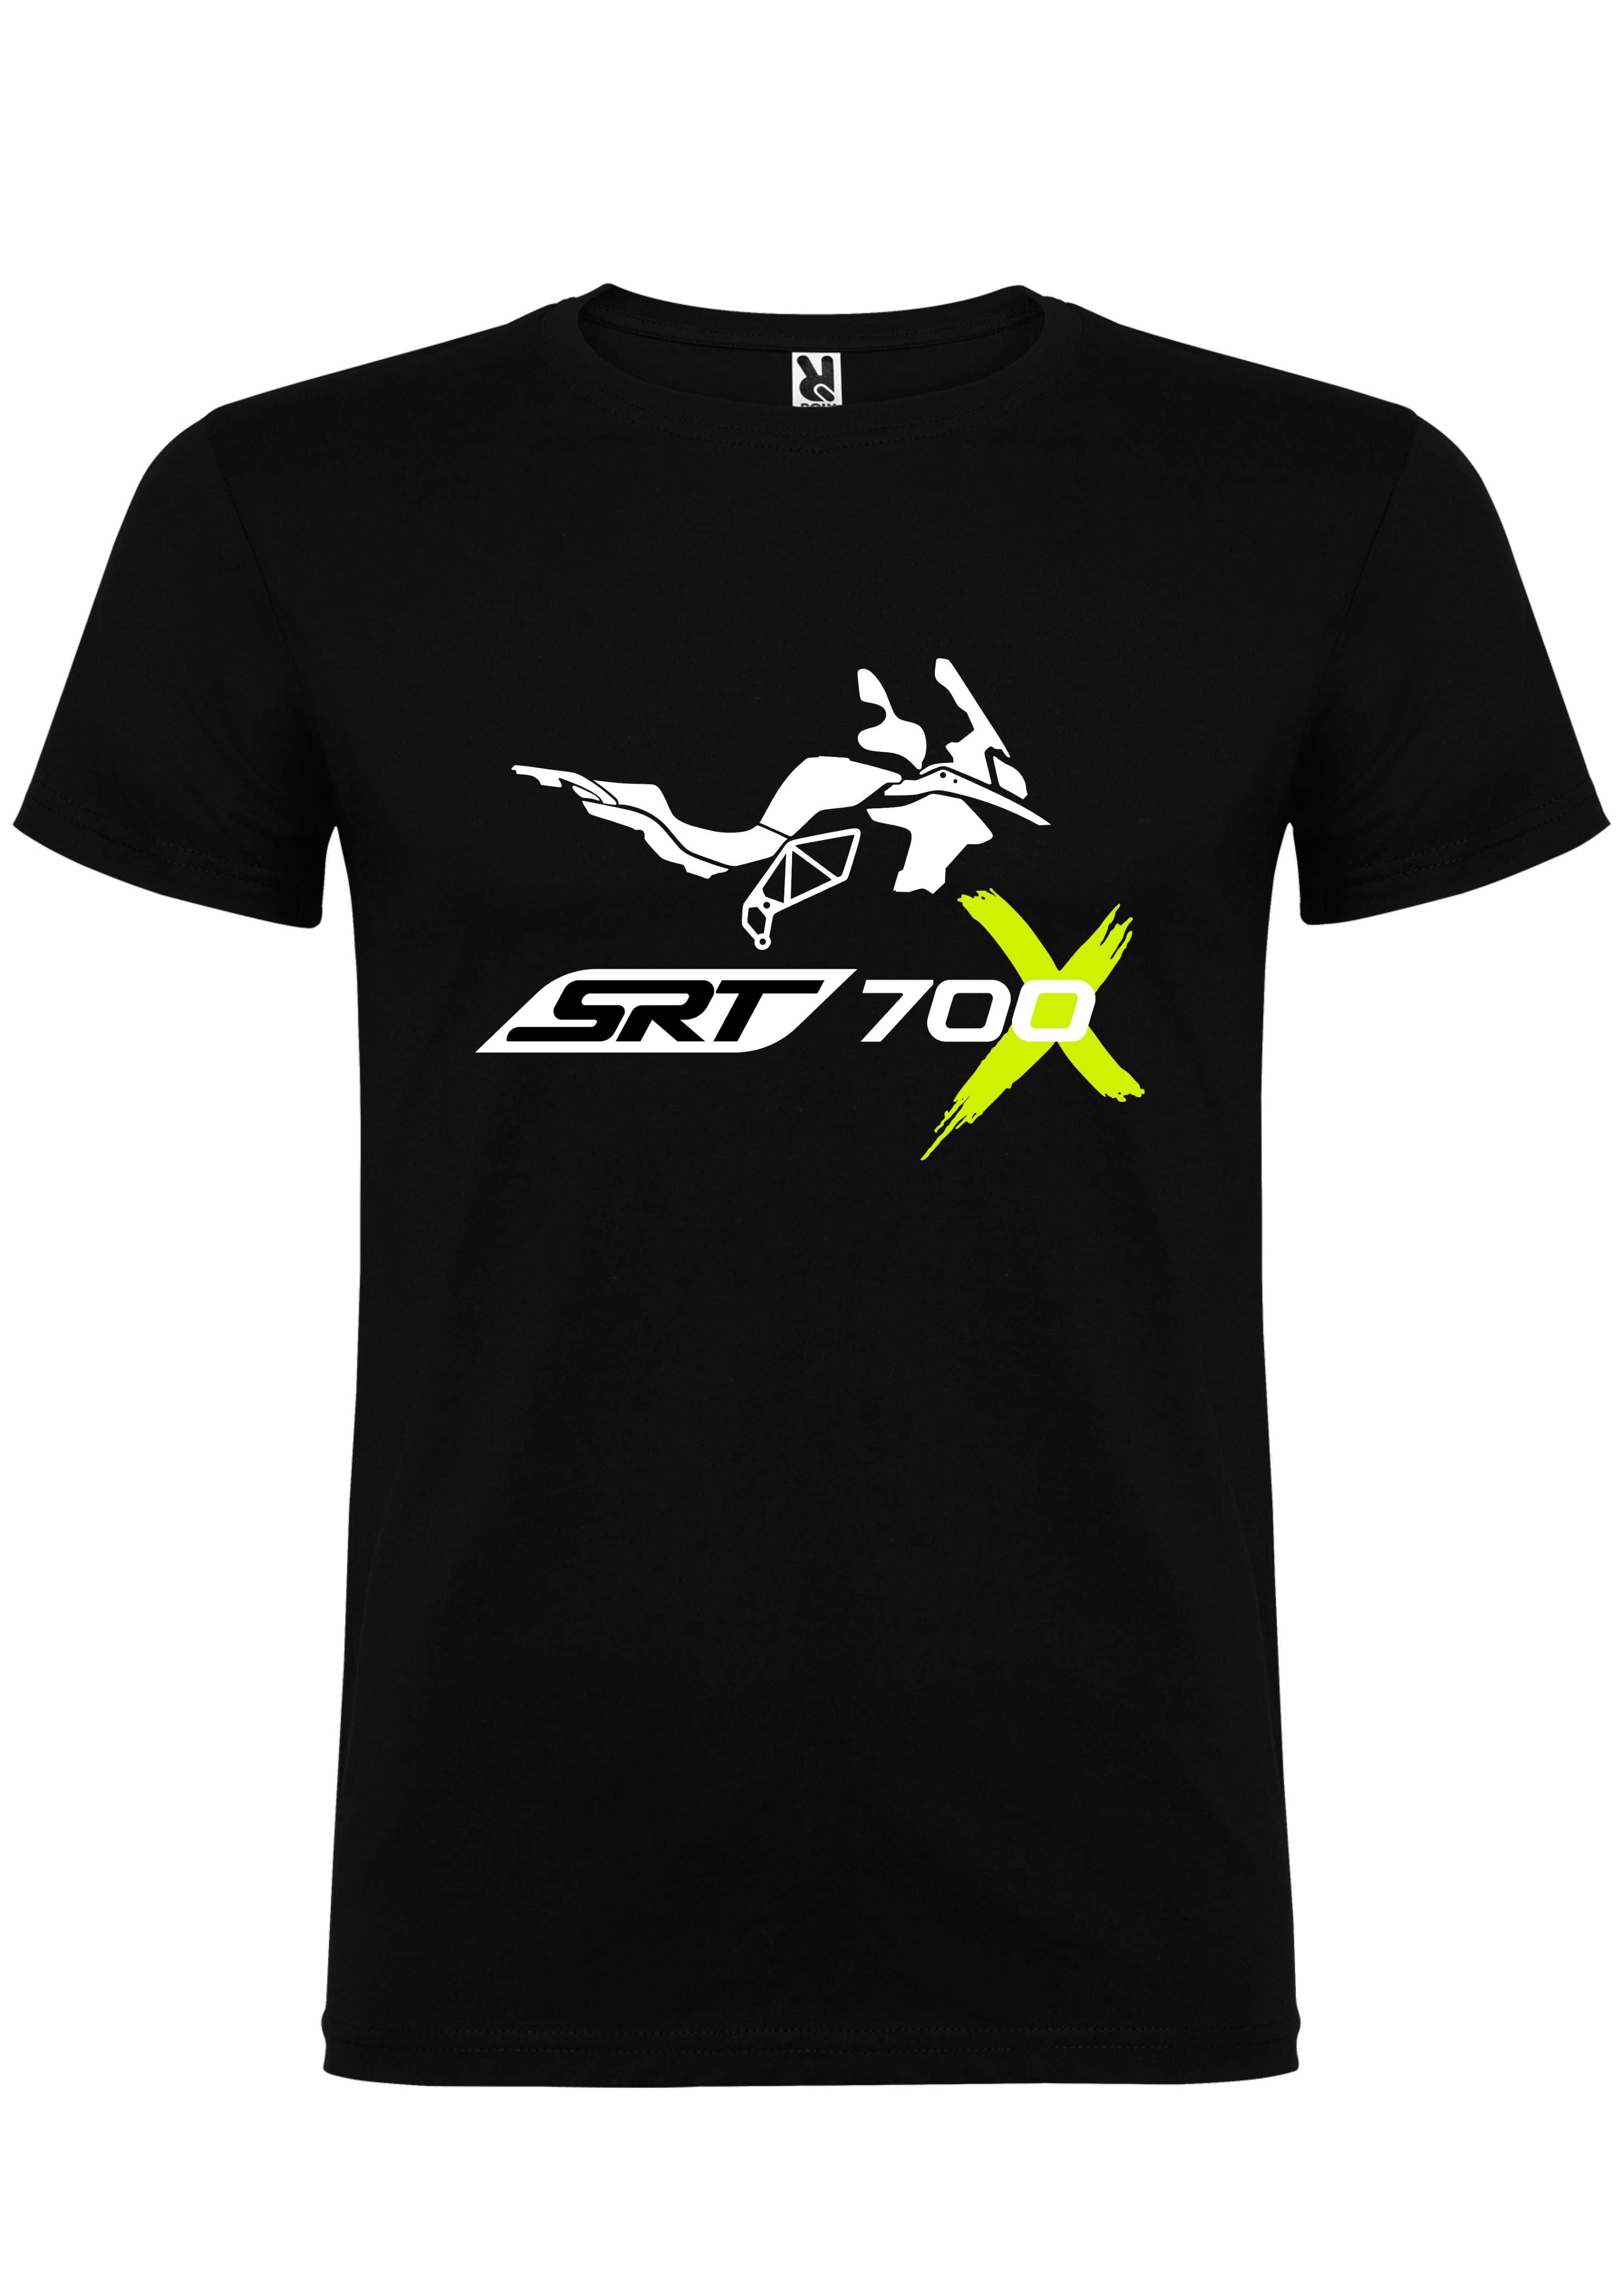 T-shirt SRT 700X Sinueta